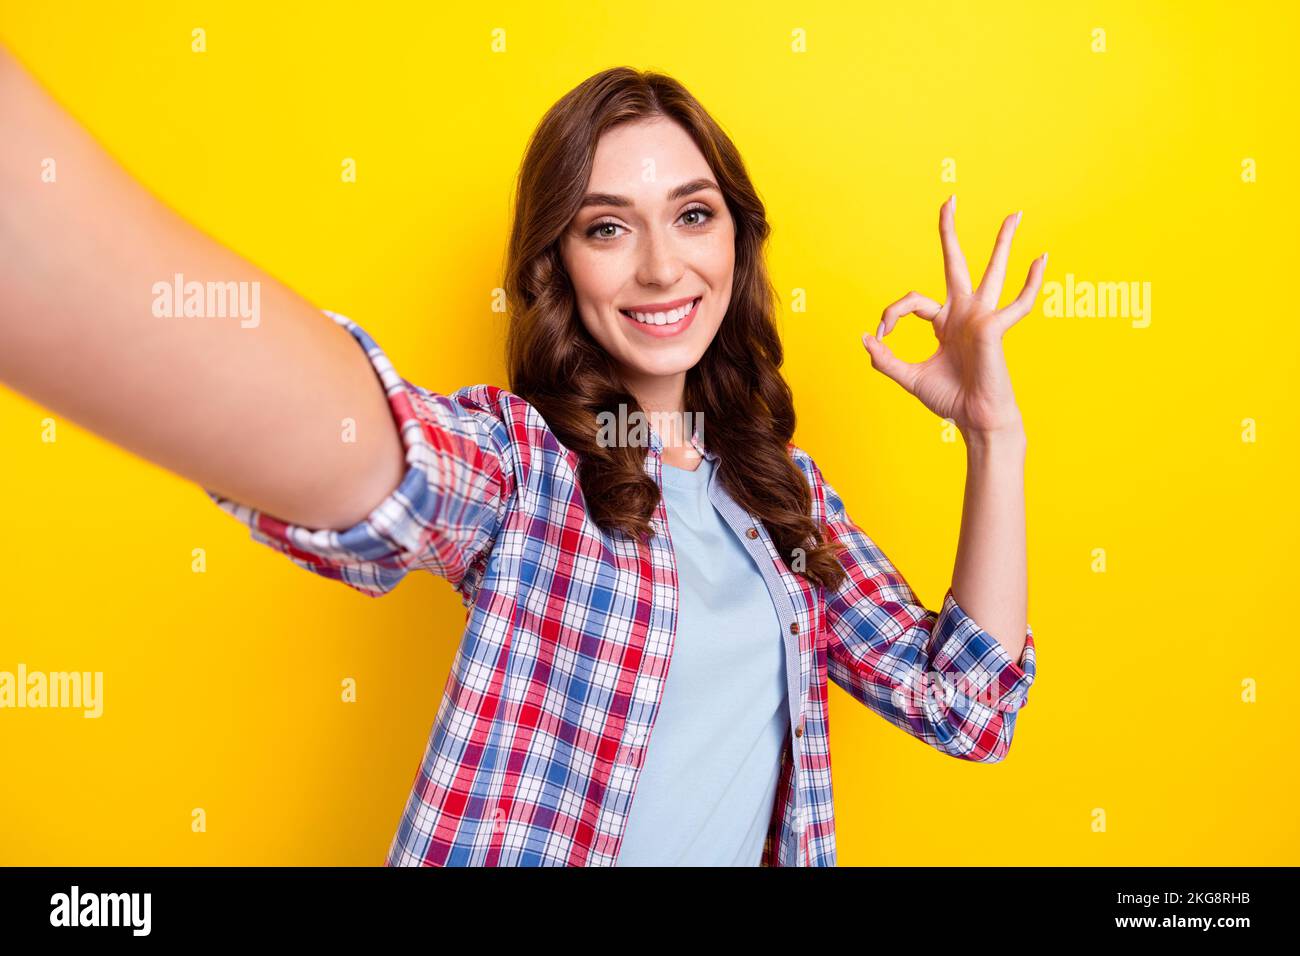 Selfie-Porträtfoto einer jungen süßen Frau mit OKY-Zeichen alles cool Beliebte Blogger empfehlen neue Kamera isoliert auf gelbem Hintergrund Stockfoto